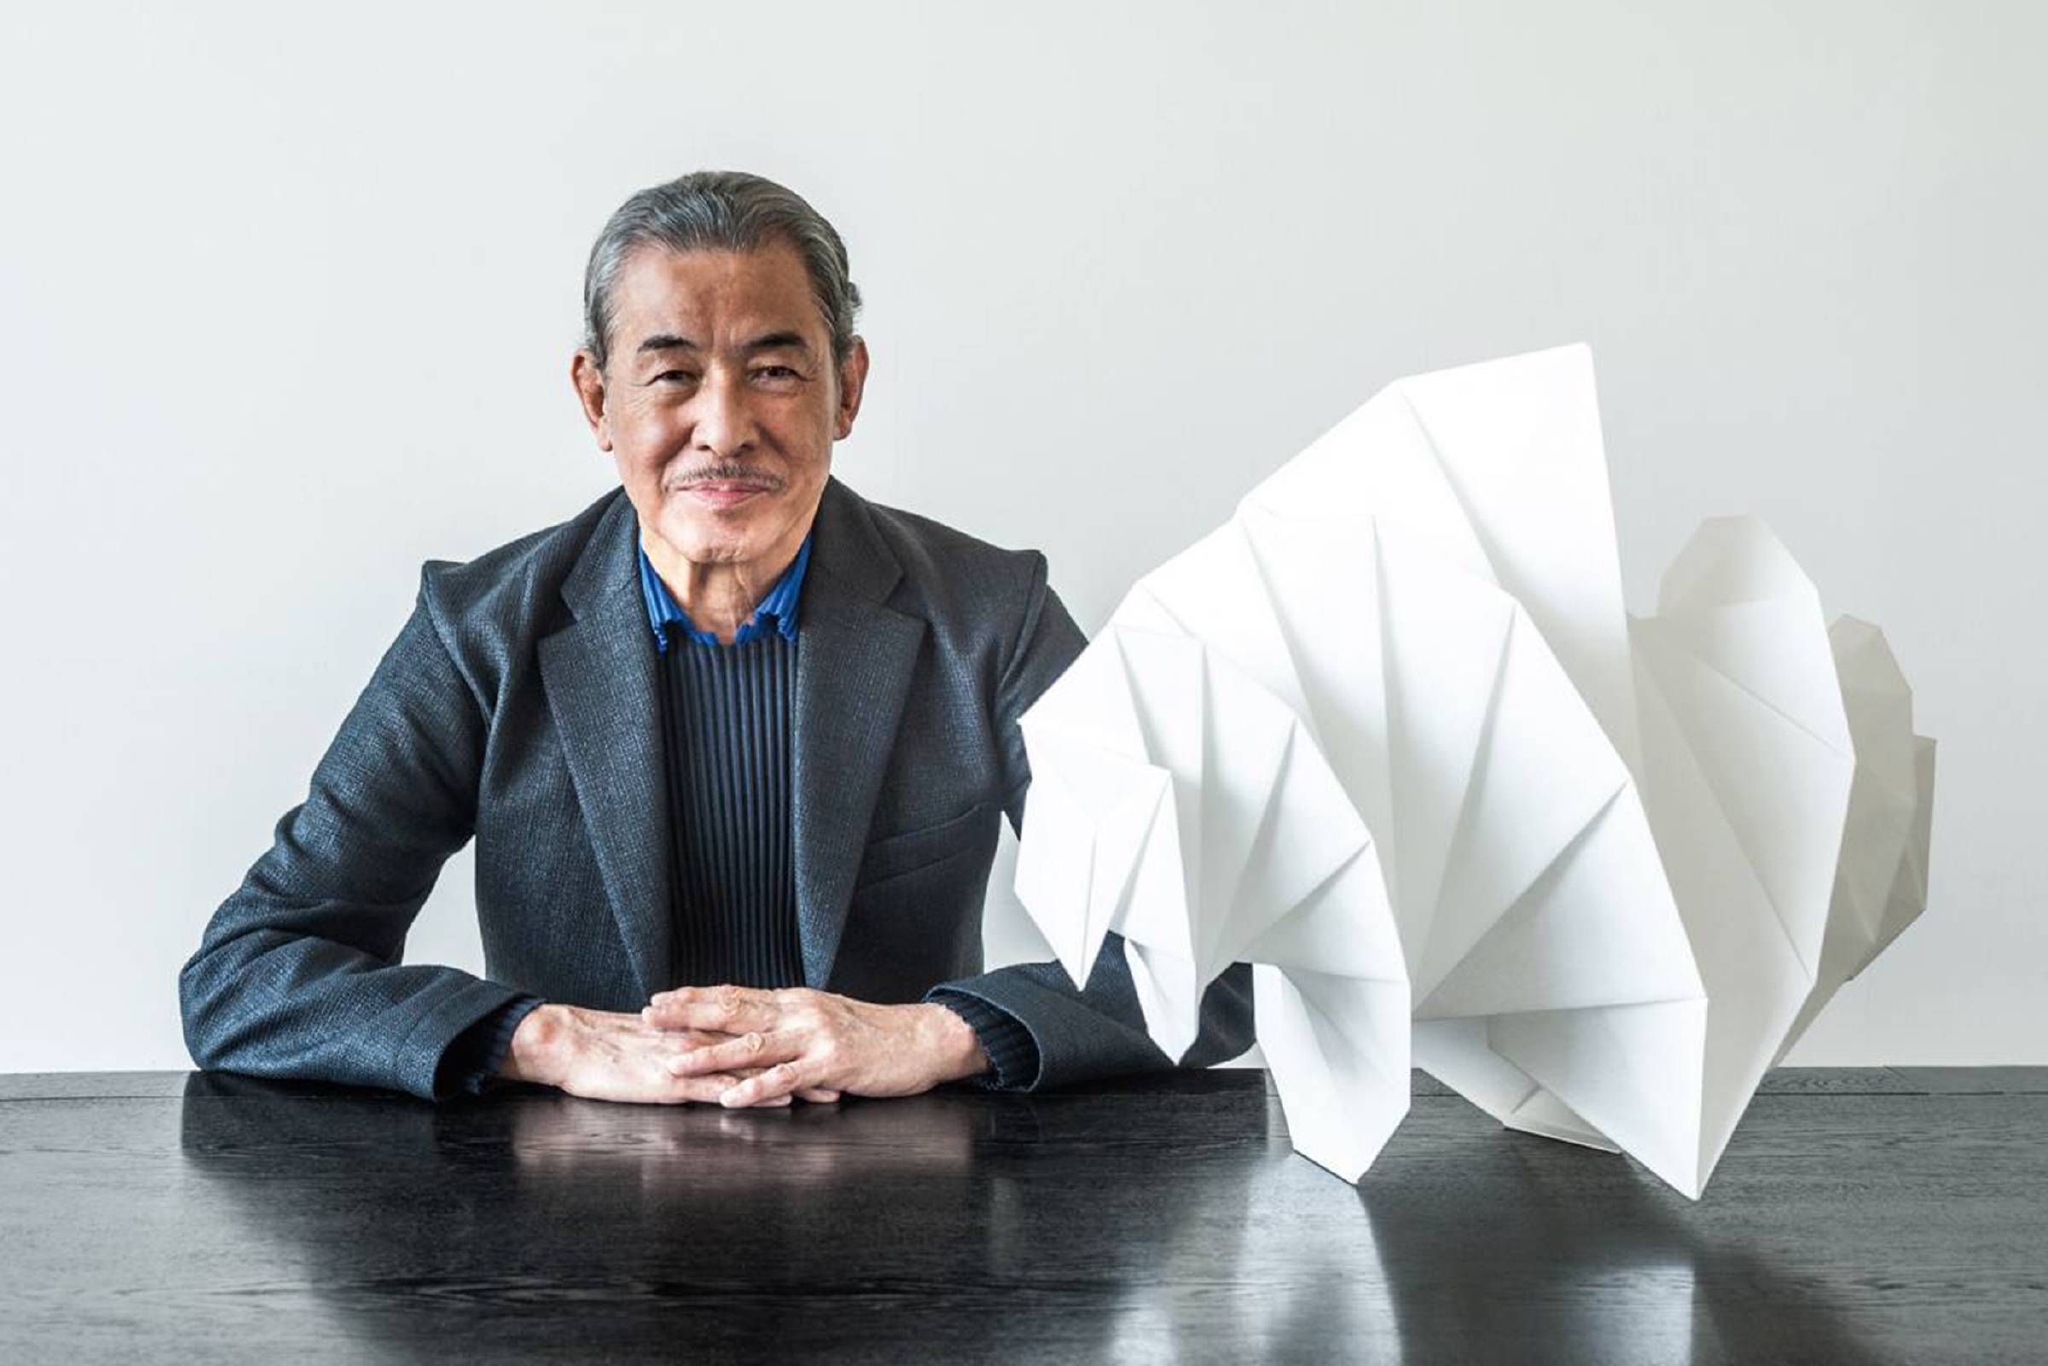 日本服装设计师三宅一生因癌症去世 享年84岁